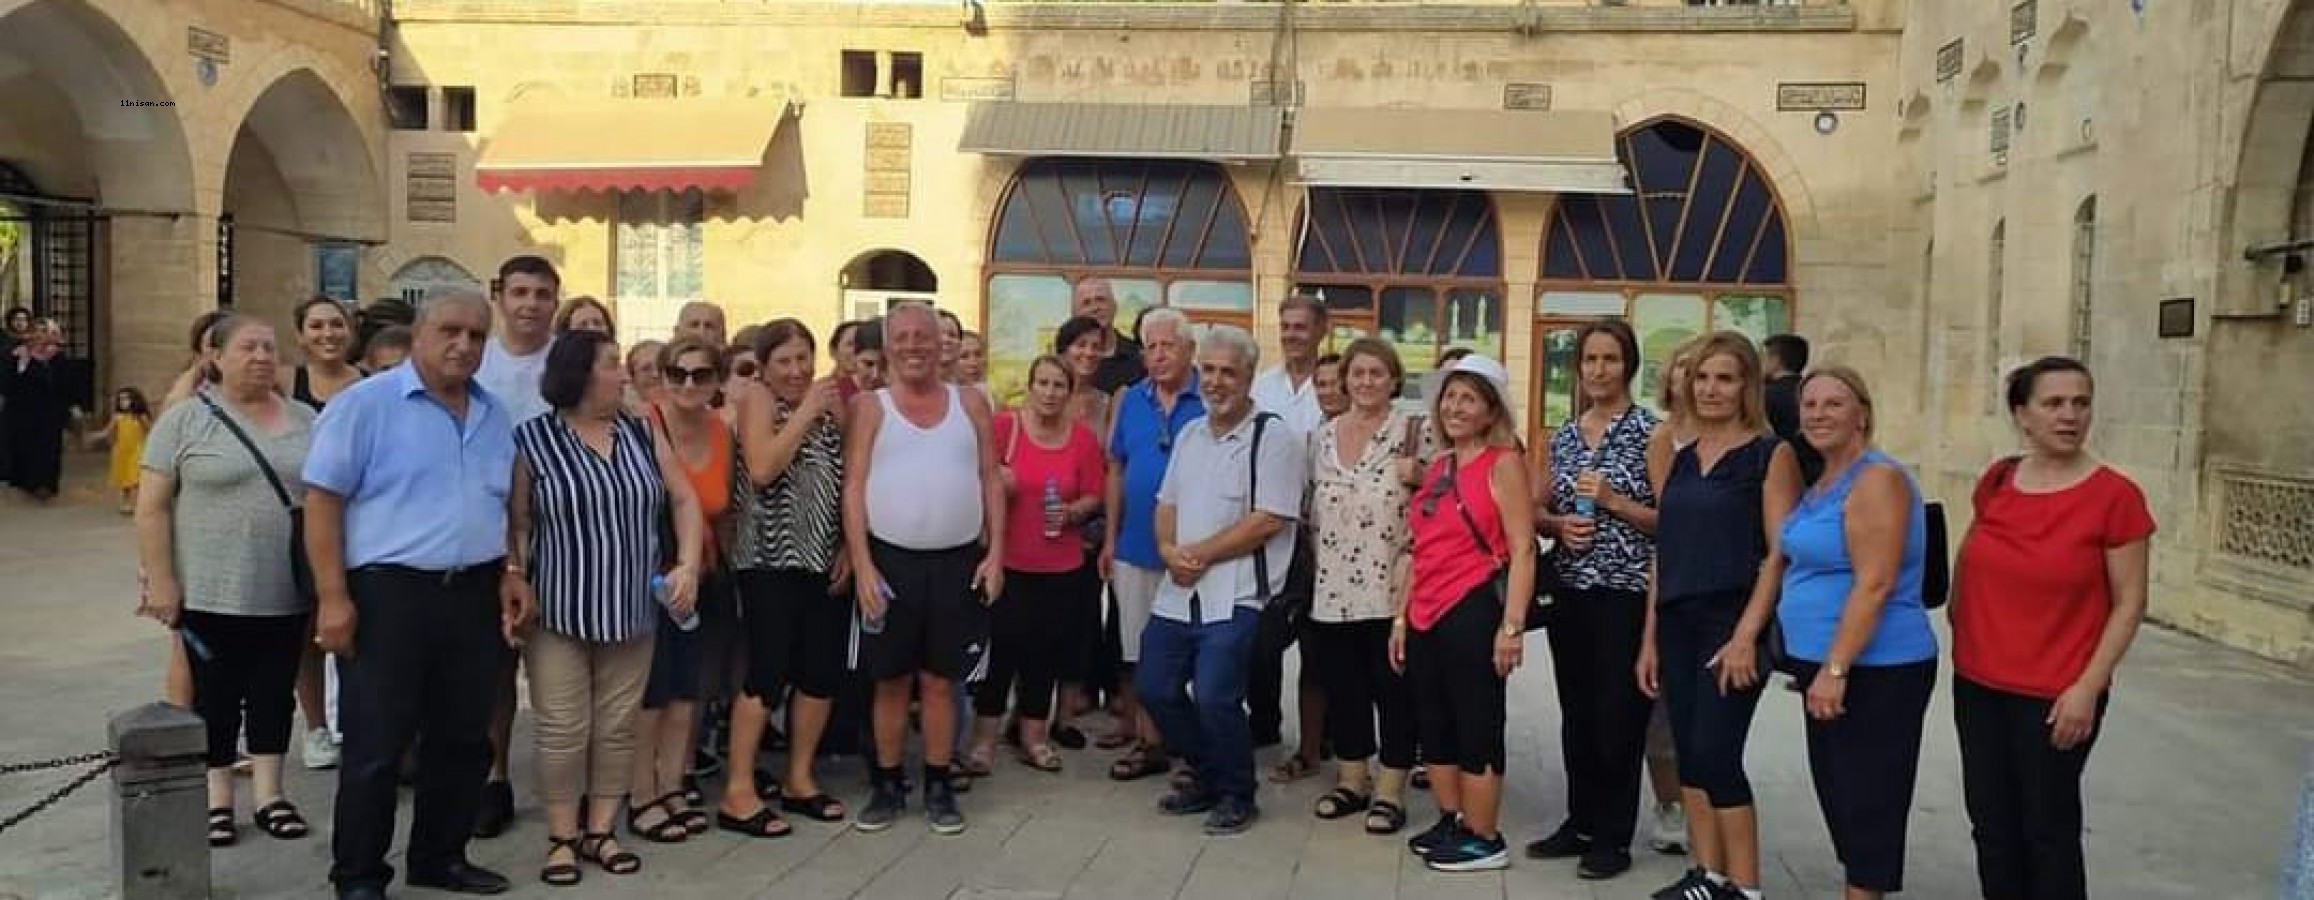 Süryani turistler 100 yıl sonra Urfa’ya geziye geldiler;